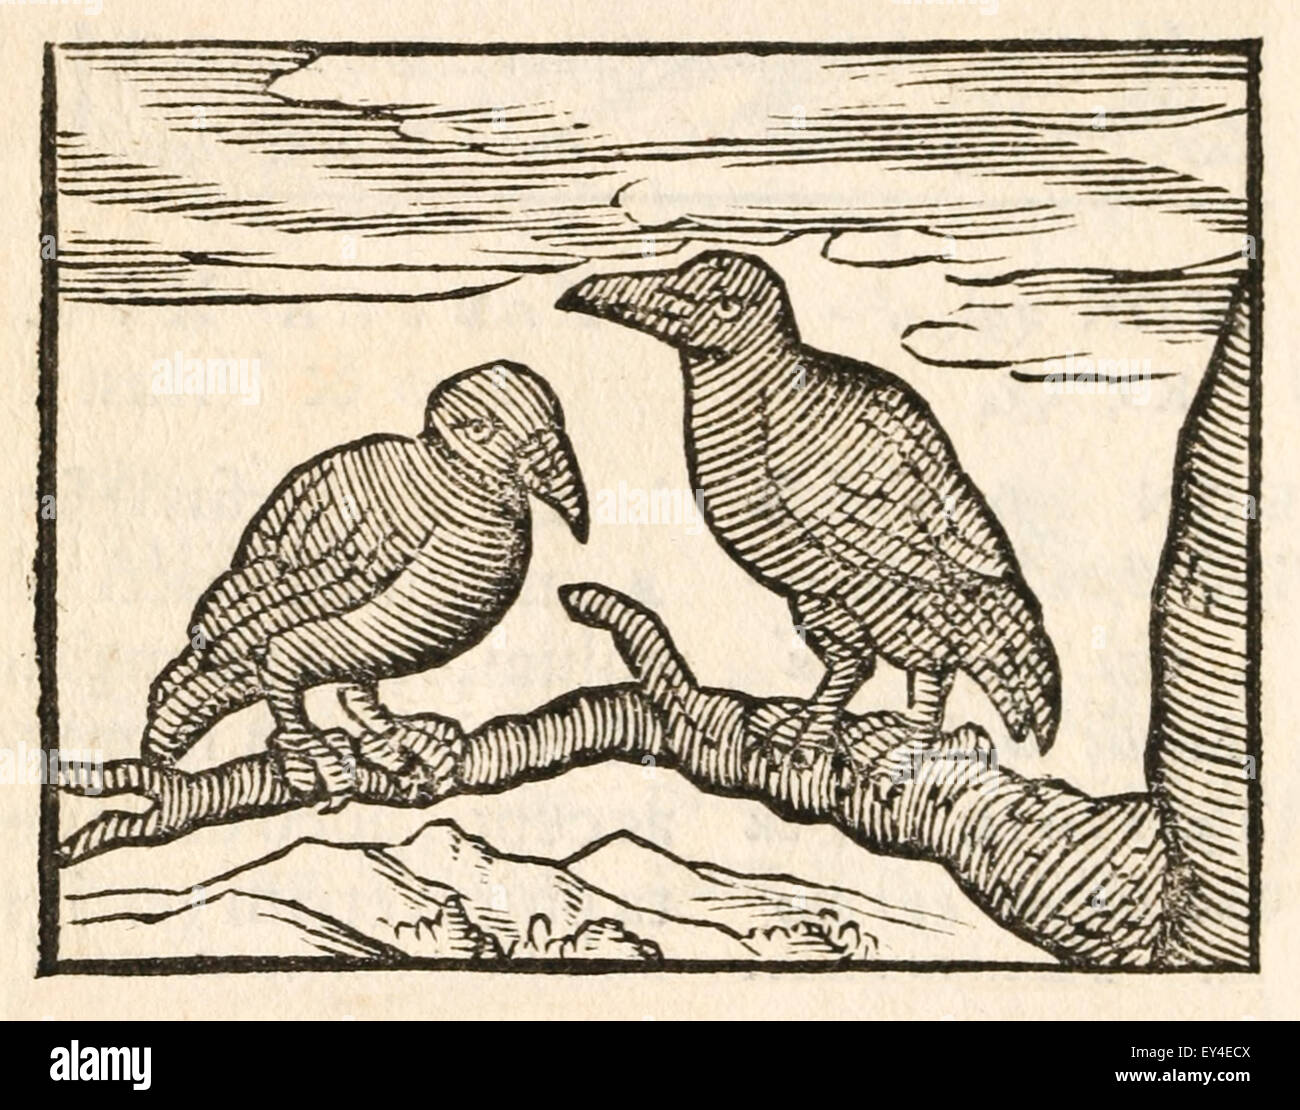 "Die Krähe und der Rabe" Fabel von Aesop (ca. 600). 17. Jahrhundert Holzschnitt Drucken zur Veranschaulichung Aesop Fabeln. Siehe Beschreibung für mehr Informationen. Stockfoto